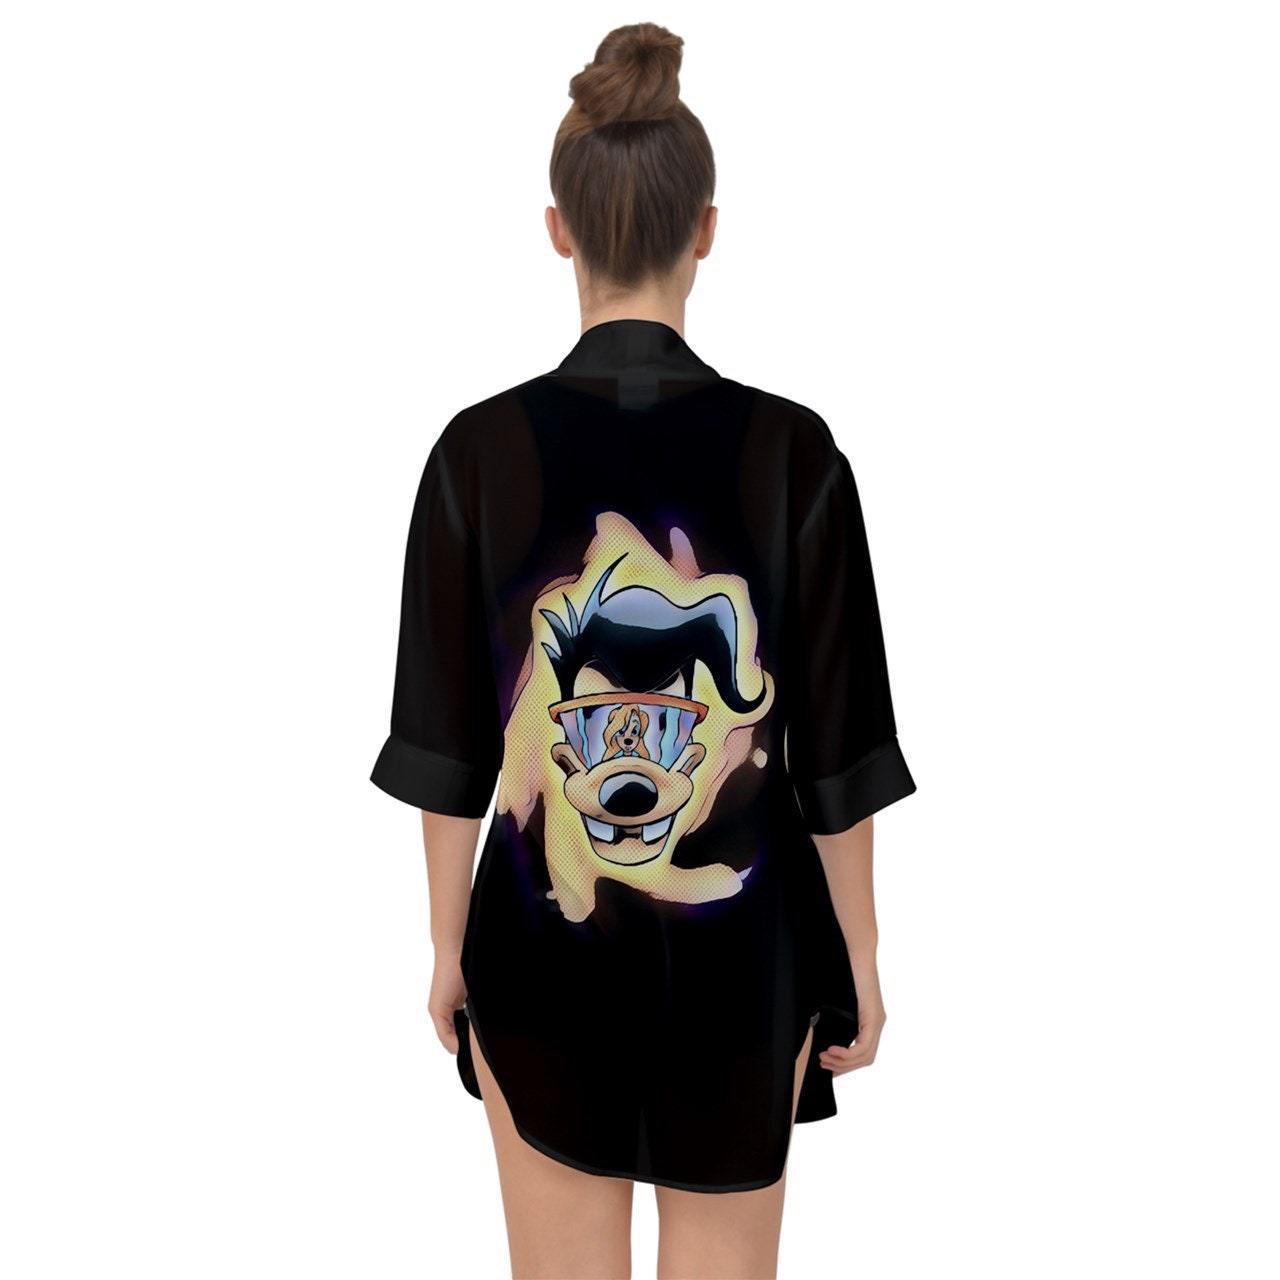 Powerline (Max) Chiffon Kimono |  Powerline Kimono | Powerline Shirt